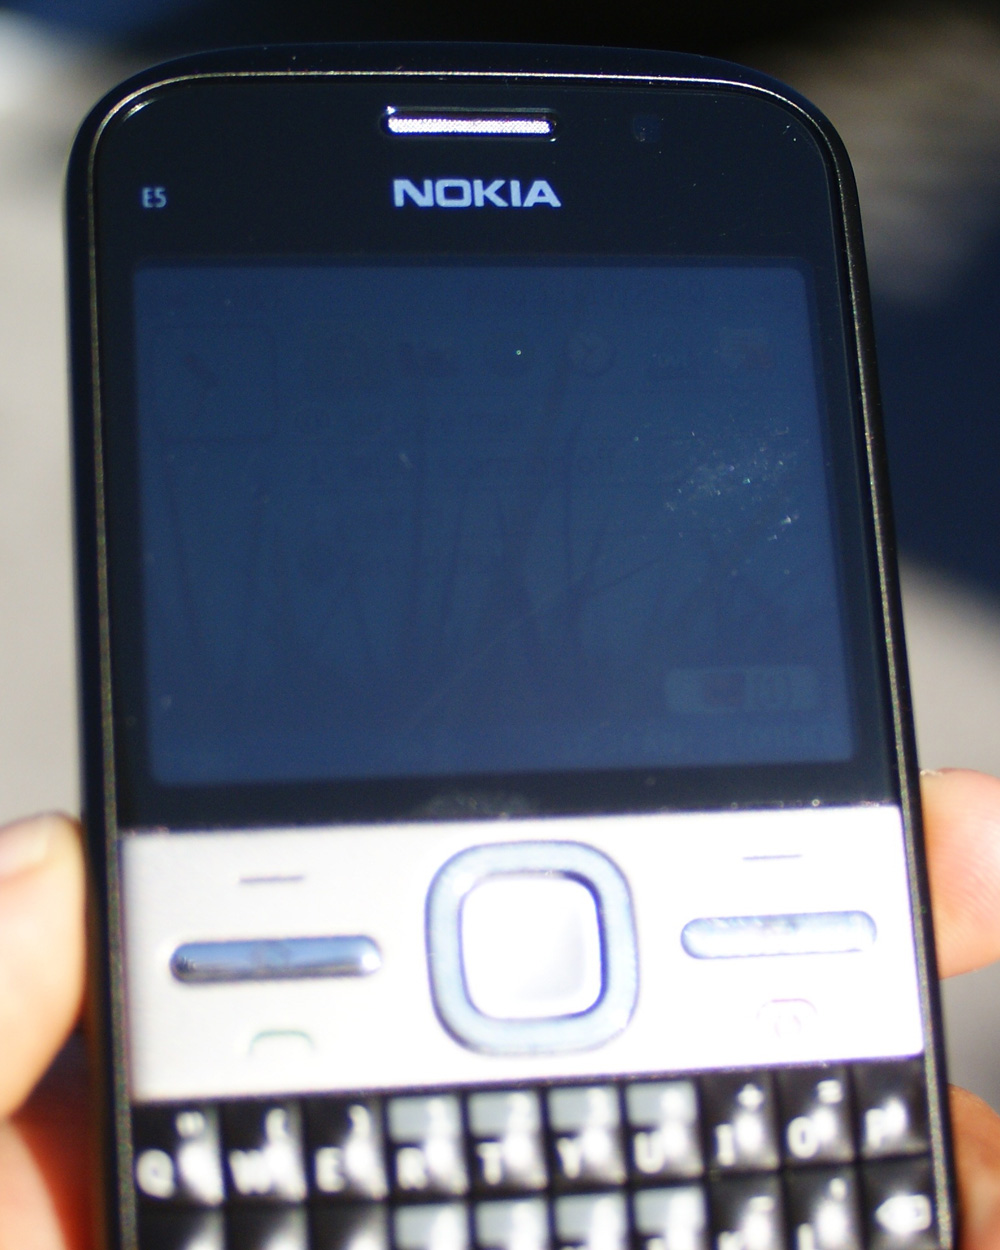 Download Skype On Nokia E5-00